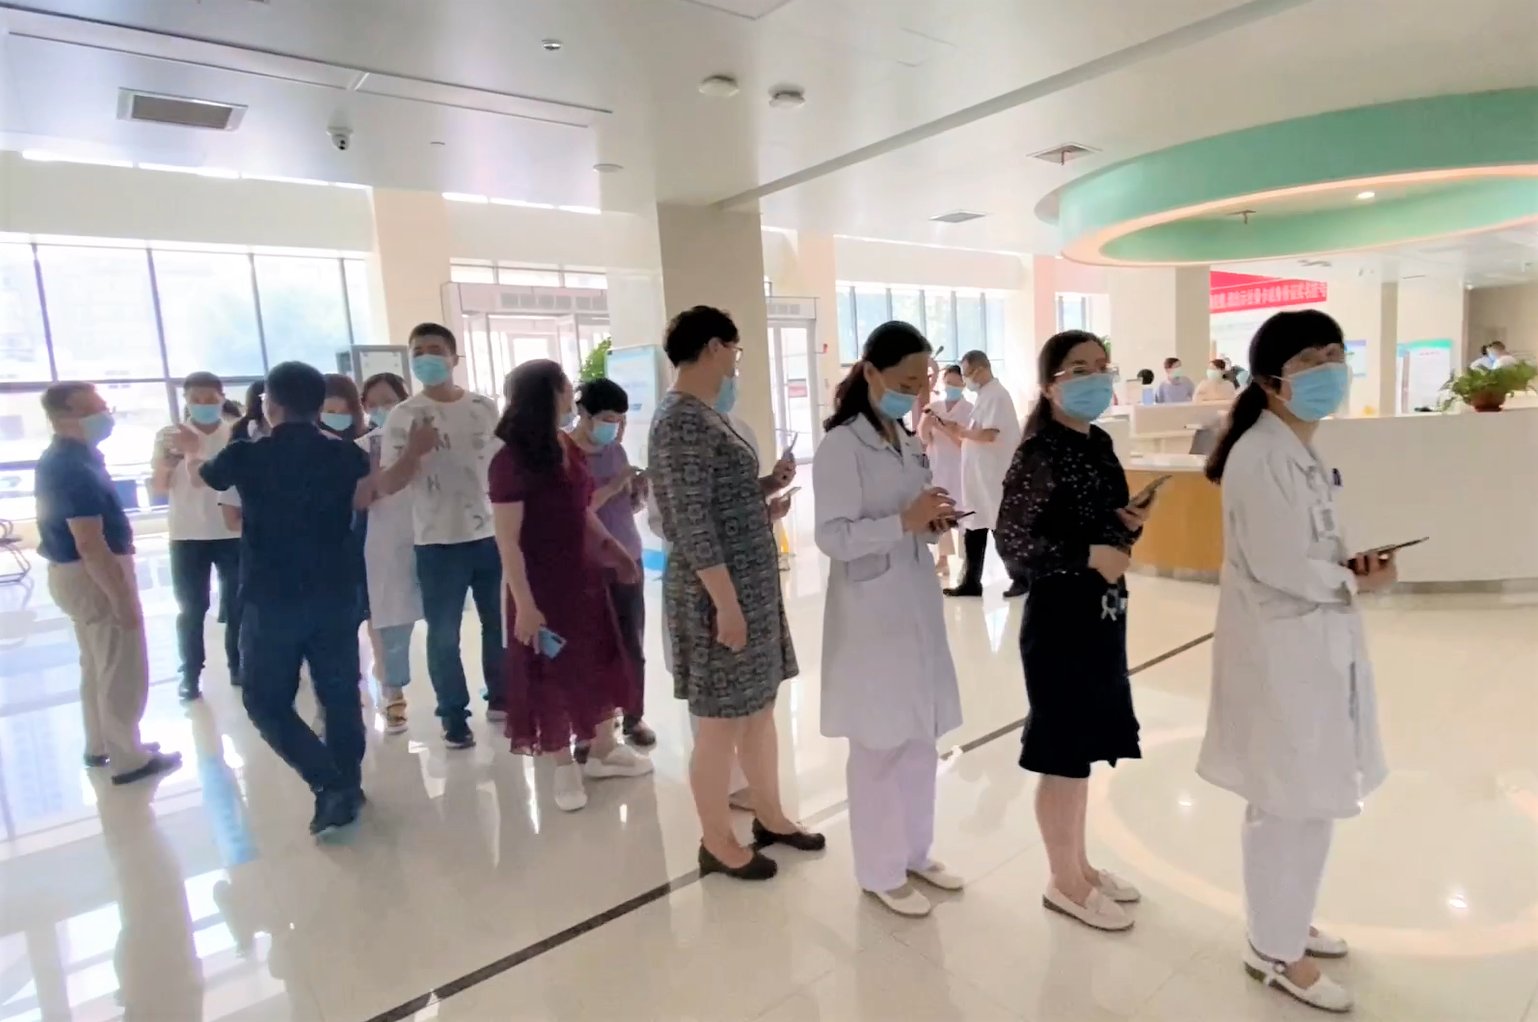 公益|潍坊这家医院突然排起长队 围观群众纷纷点赞